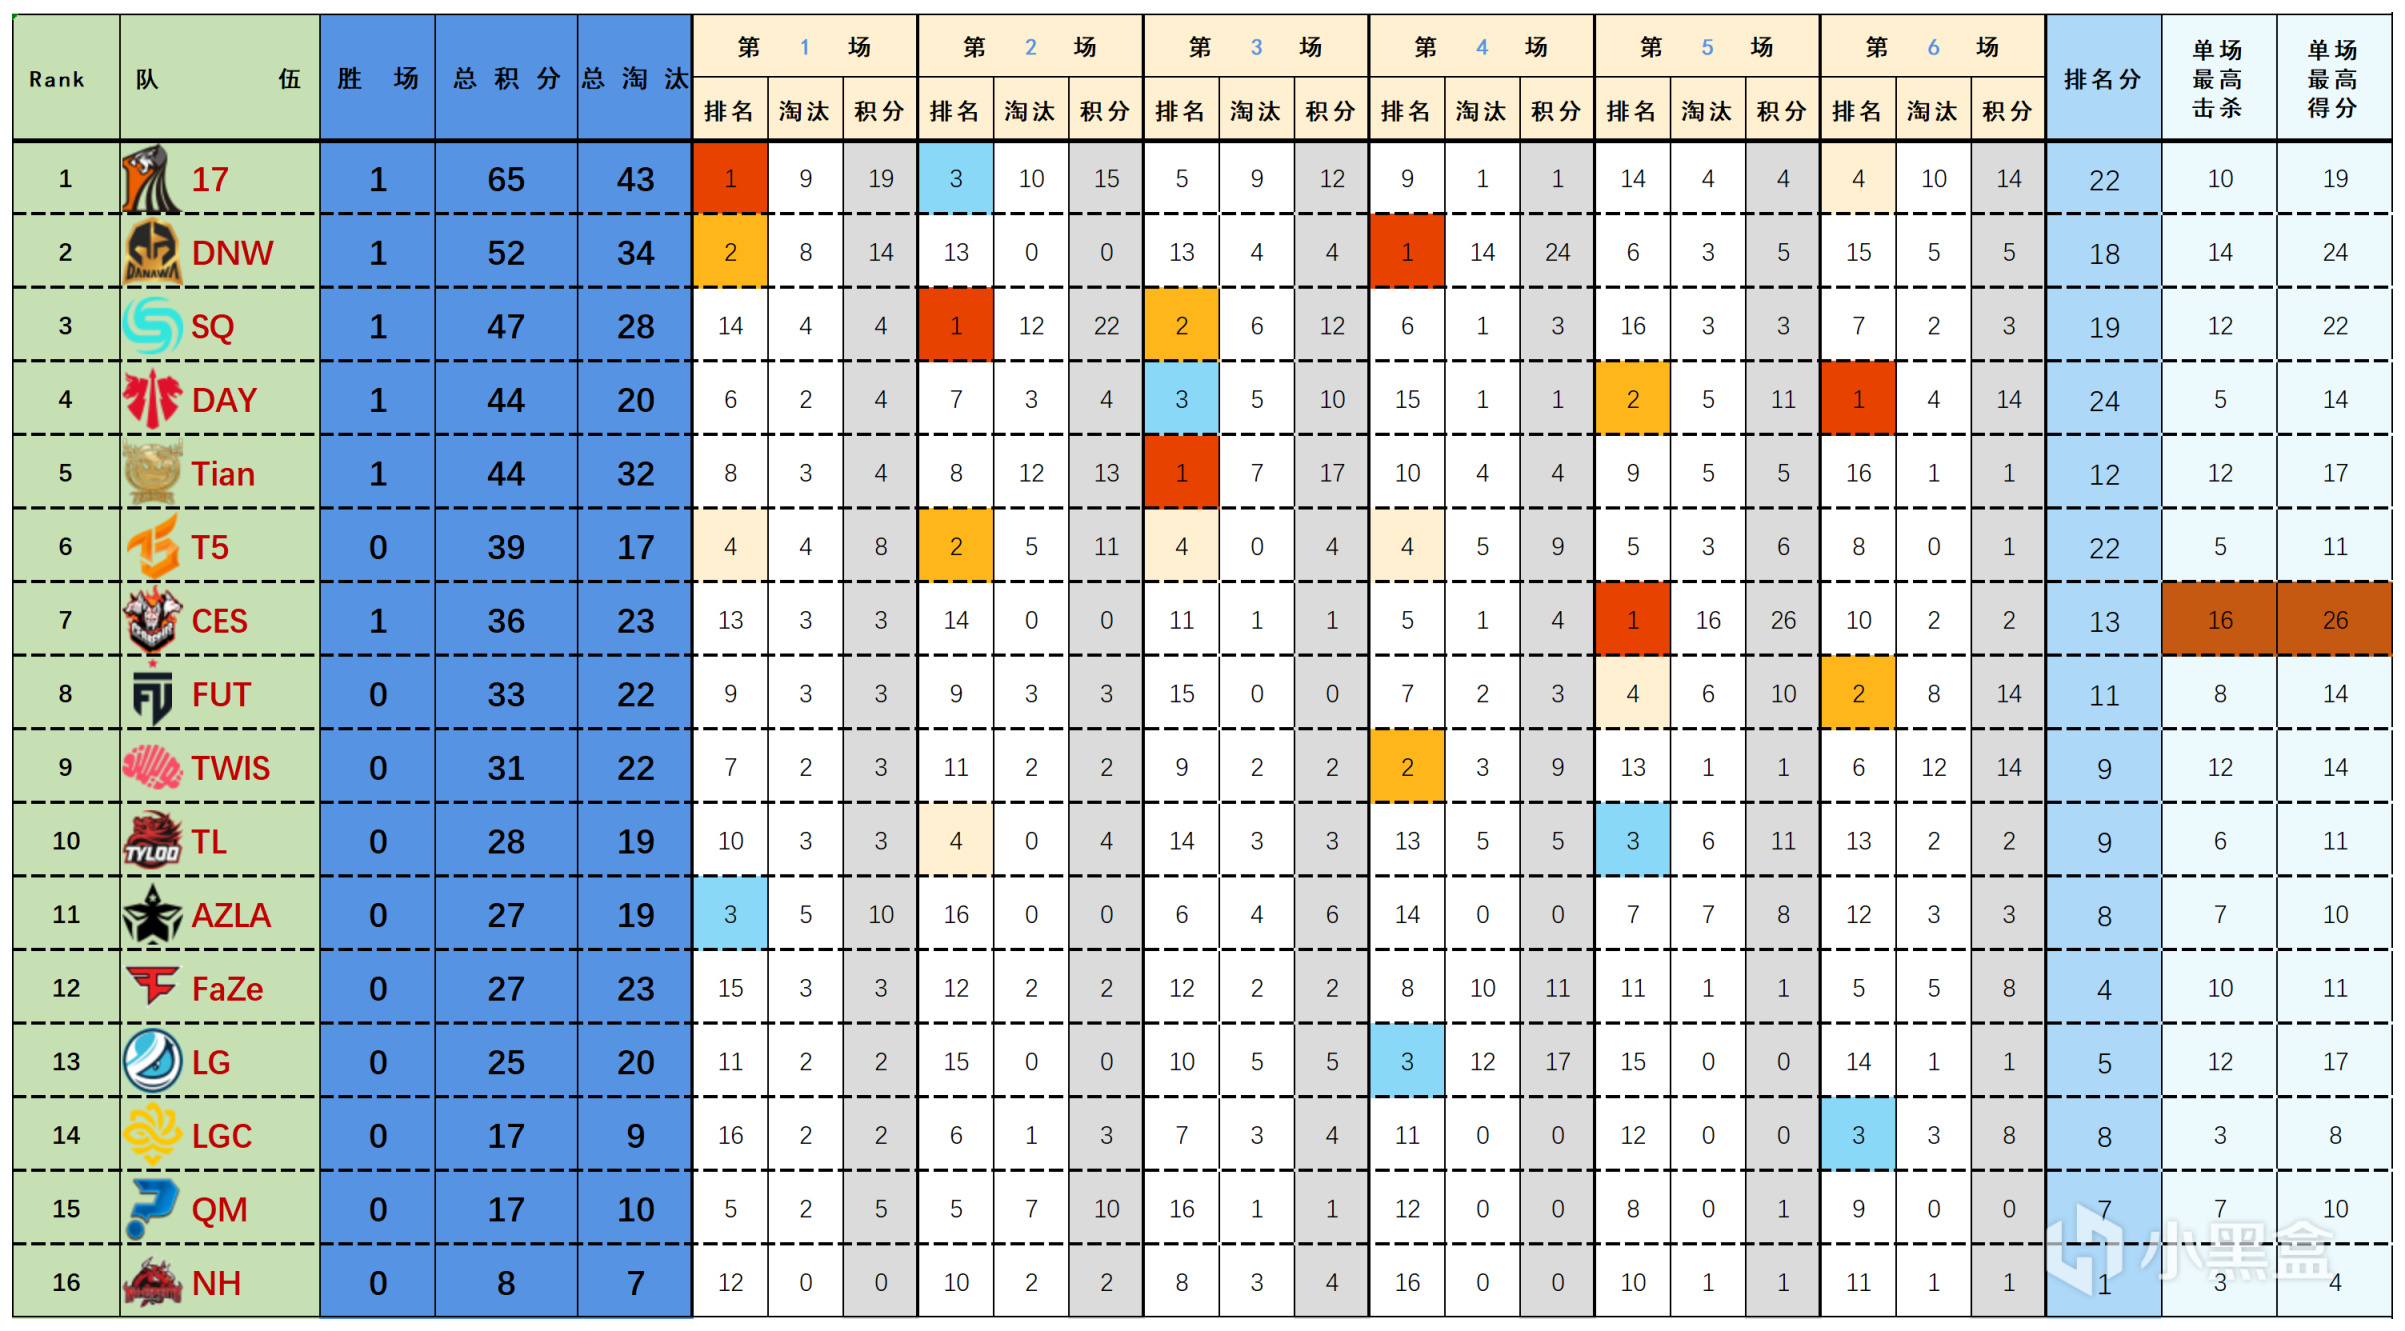 【数据流】23PGC胜者组D1,17 65分今日第一,DNW_seoul战神14淘汰-第1张